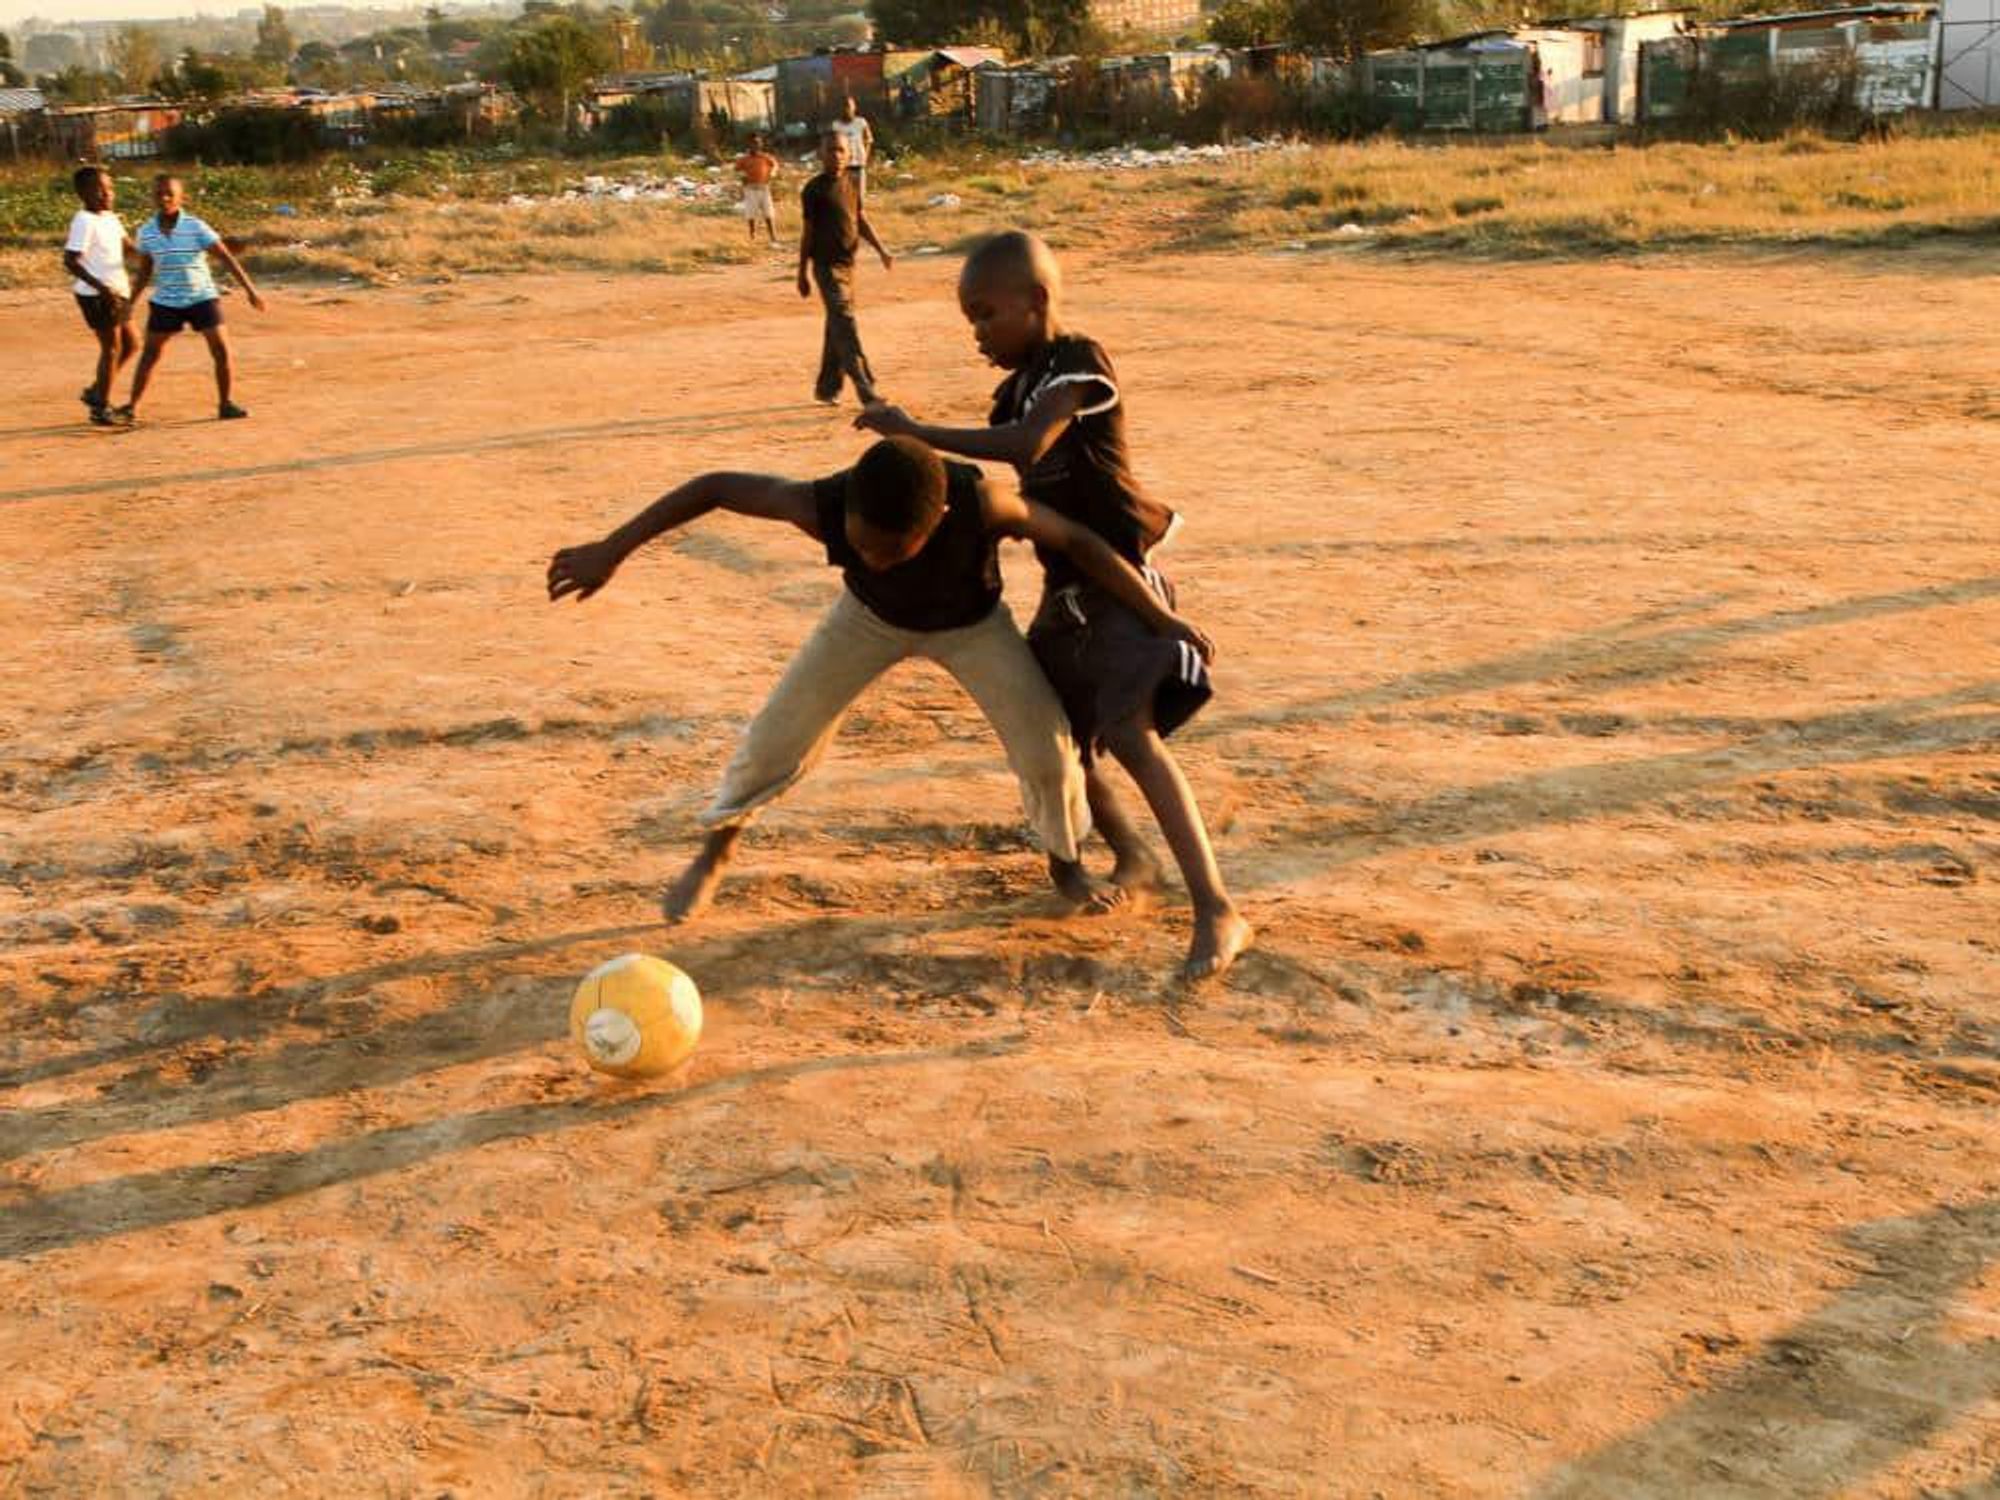 News_Vuvuzela_soccer ball_soccer_game